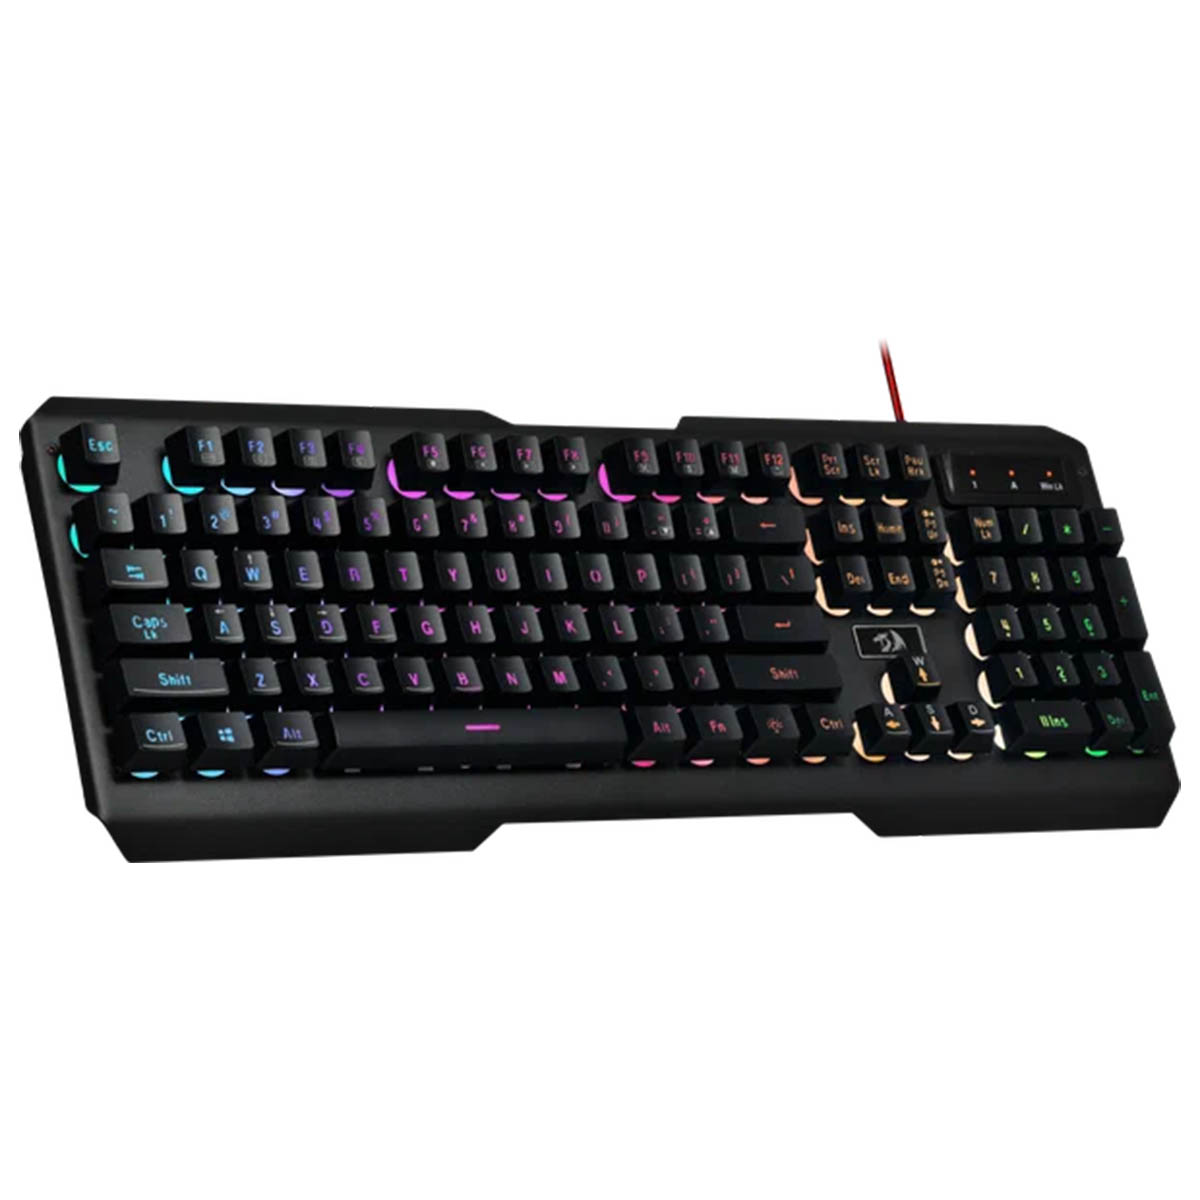 Игровая клавиатура, Redragon Centaur 2, RGB подсветка, цвет черный